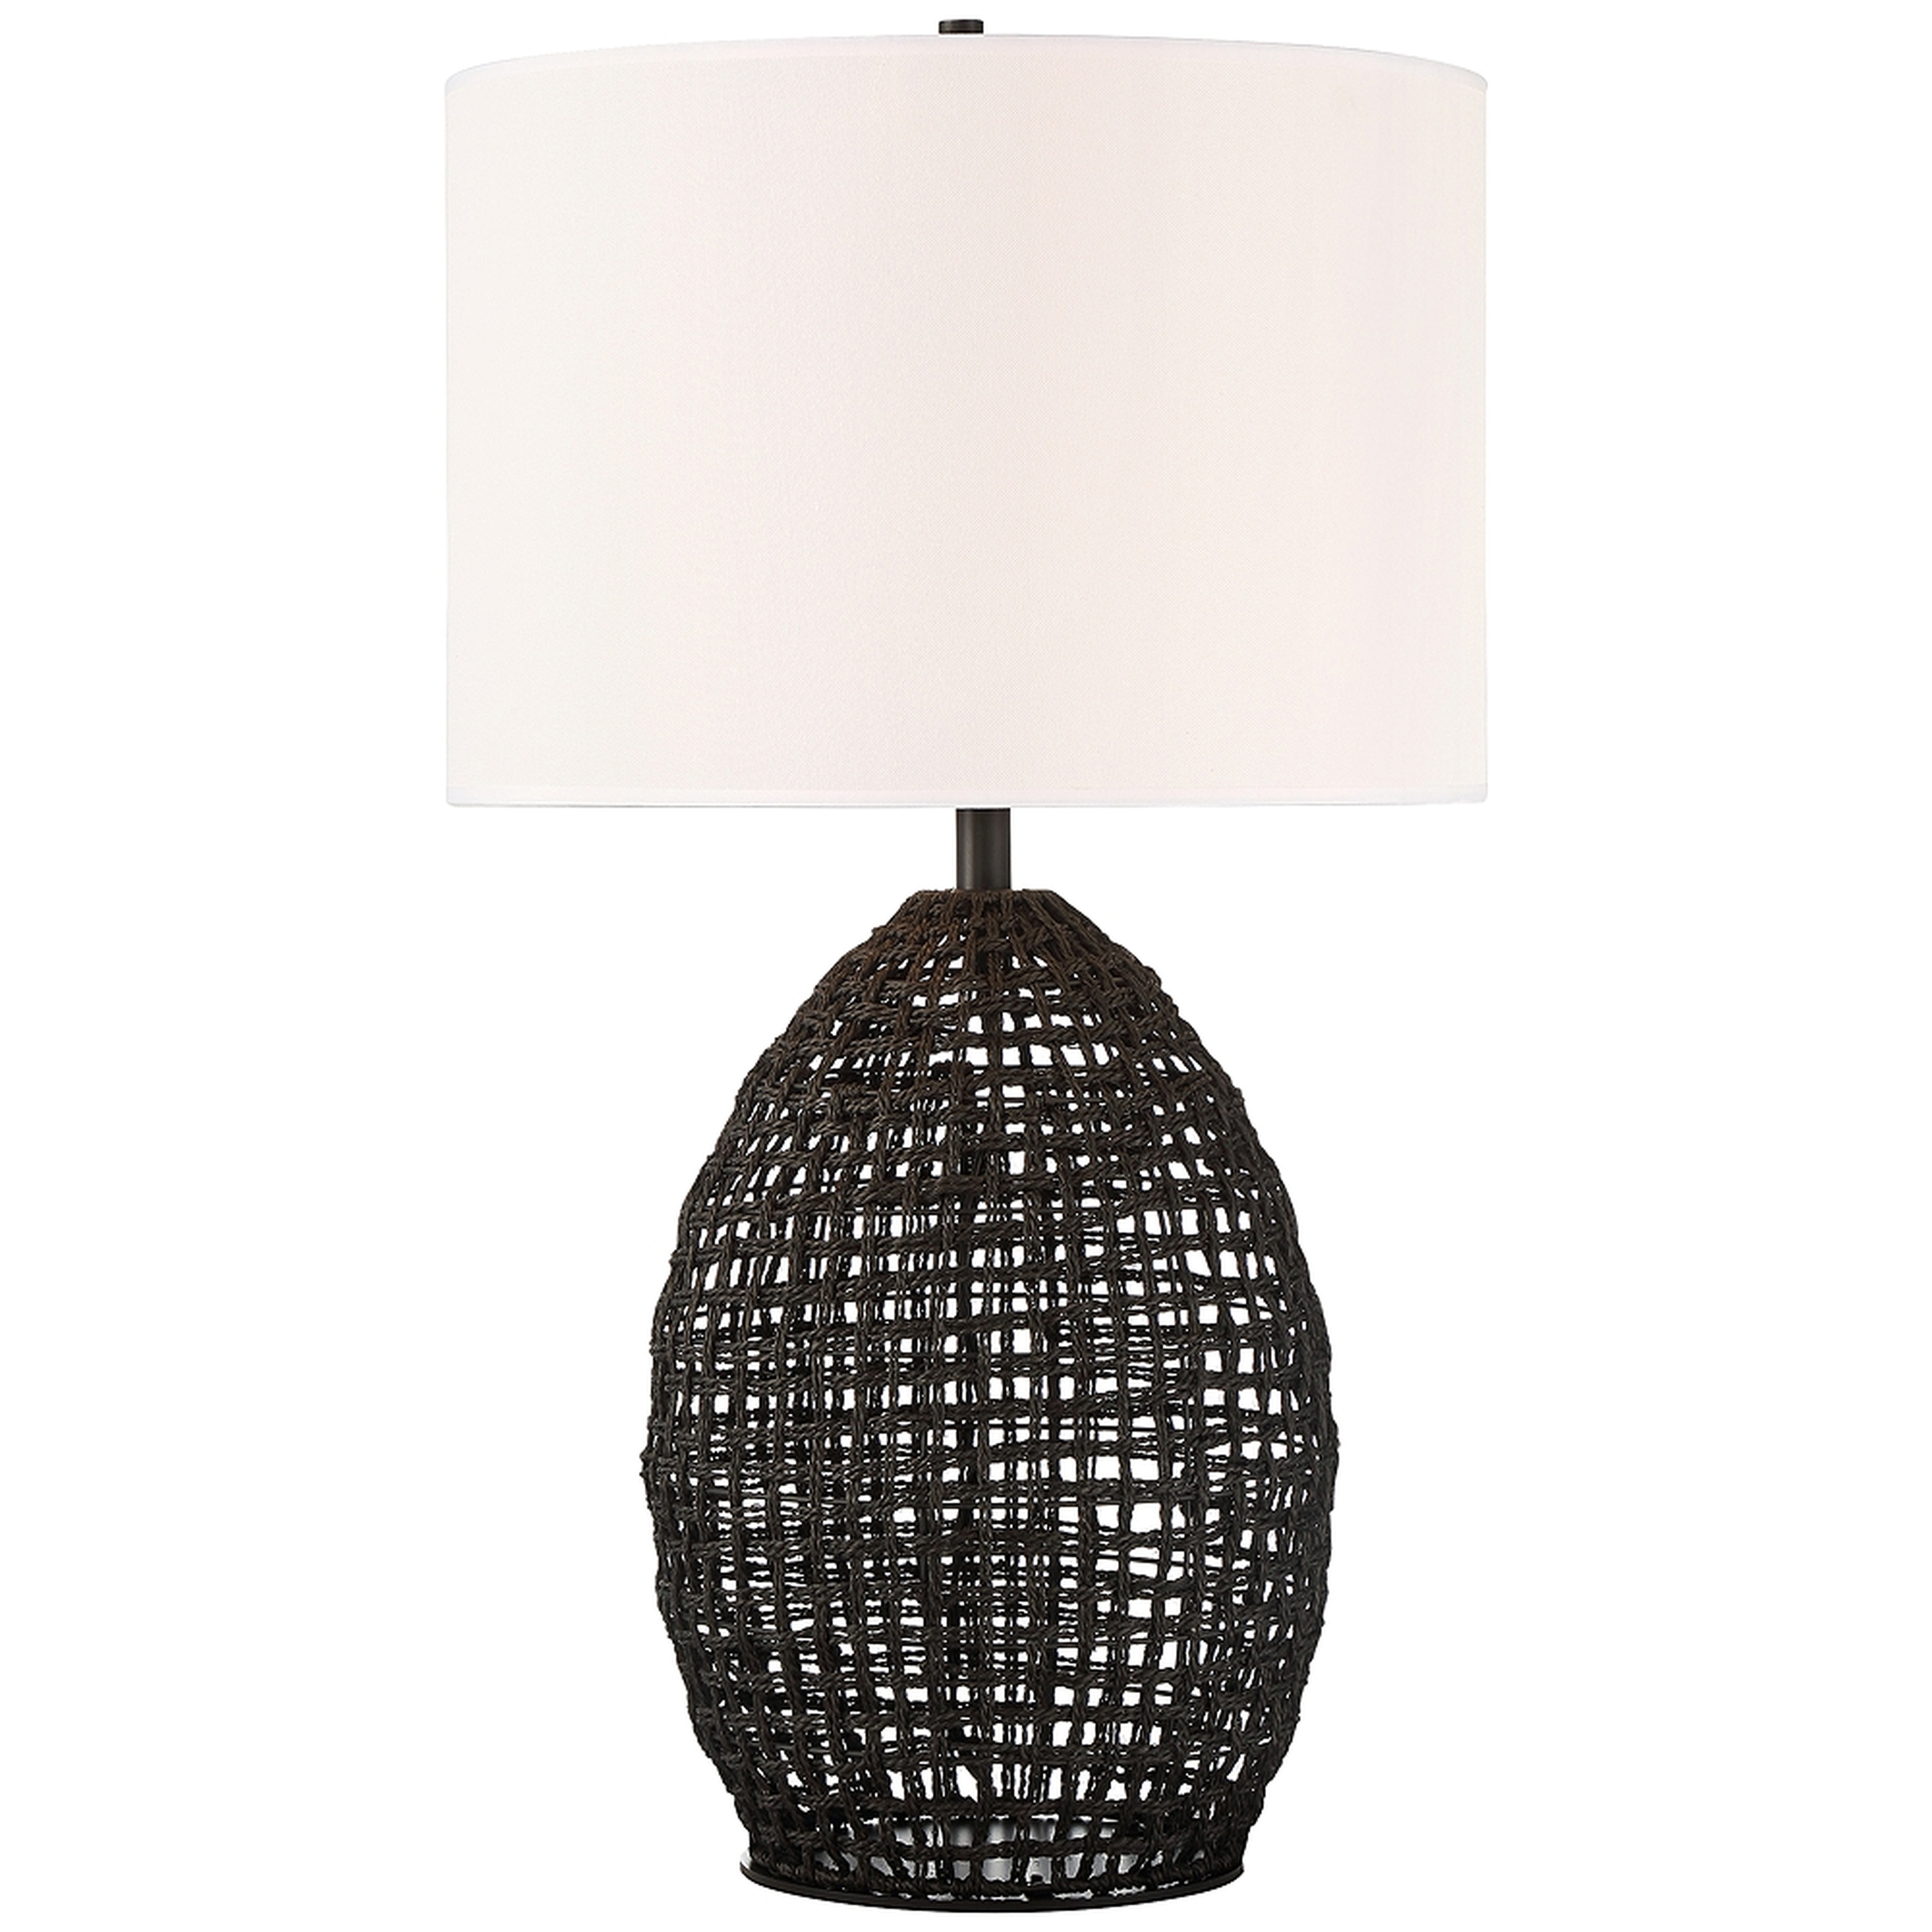 Lite Source Ivette Black Woven Rattan Table Lamp - Style # 87P71 - Lamps Plus